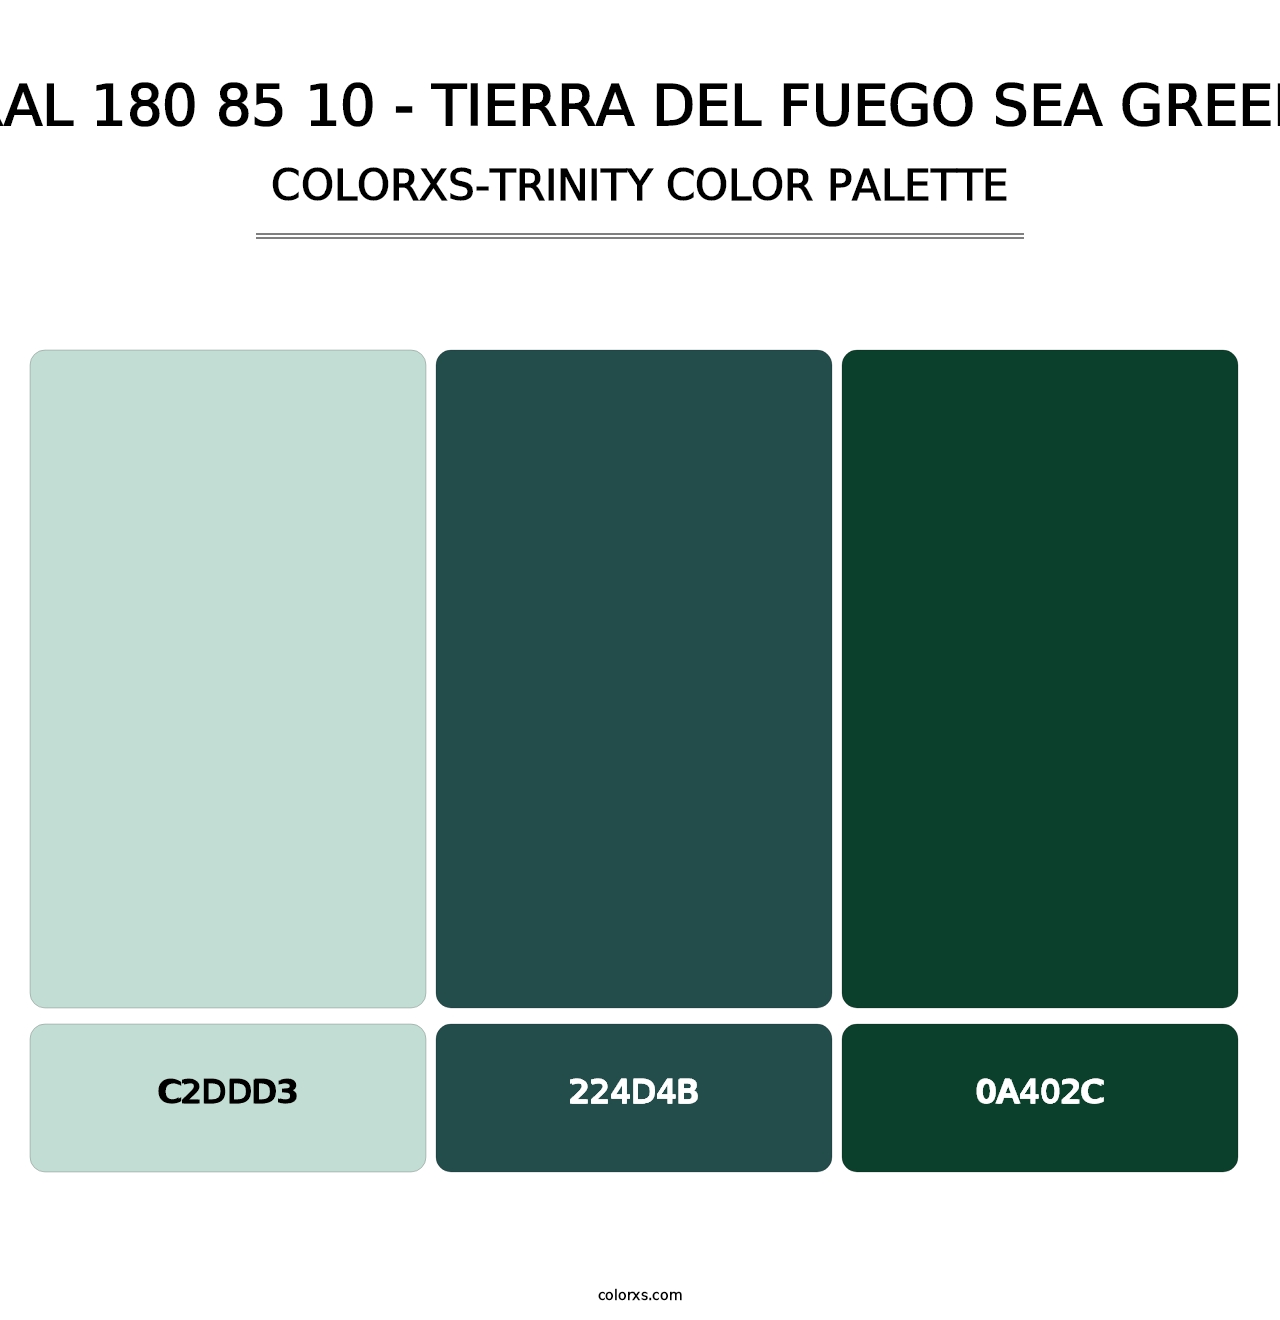 RAL 180 85 10 - Tierra Del Fuego Sea Green - Colorxs Trinity Palette